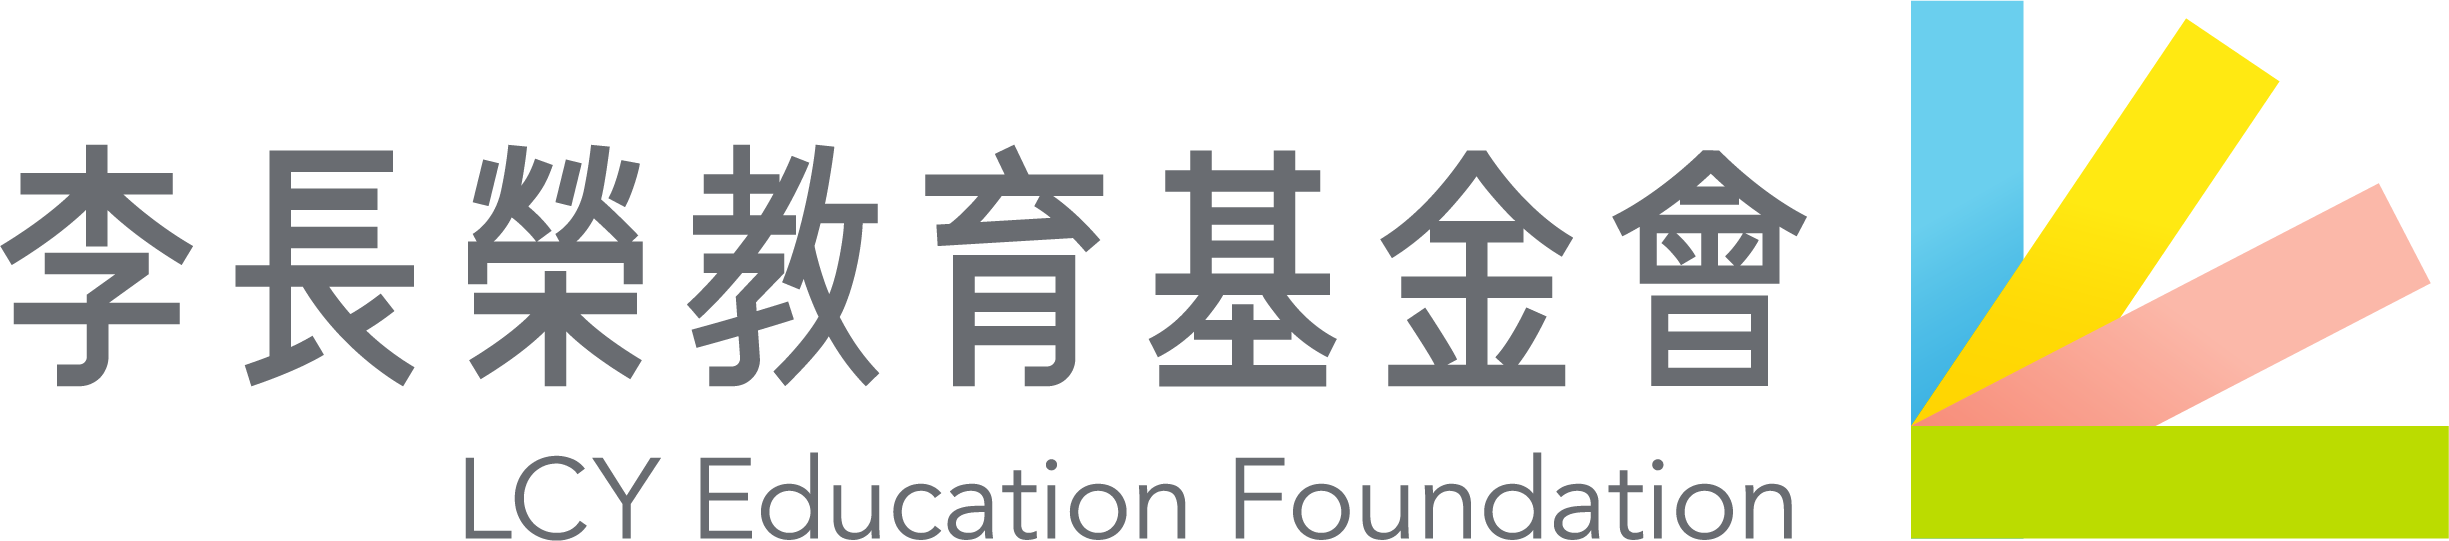 李長榮教育基金會